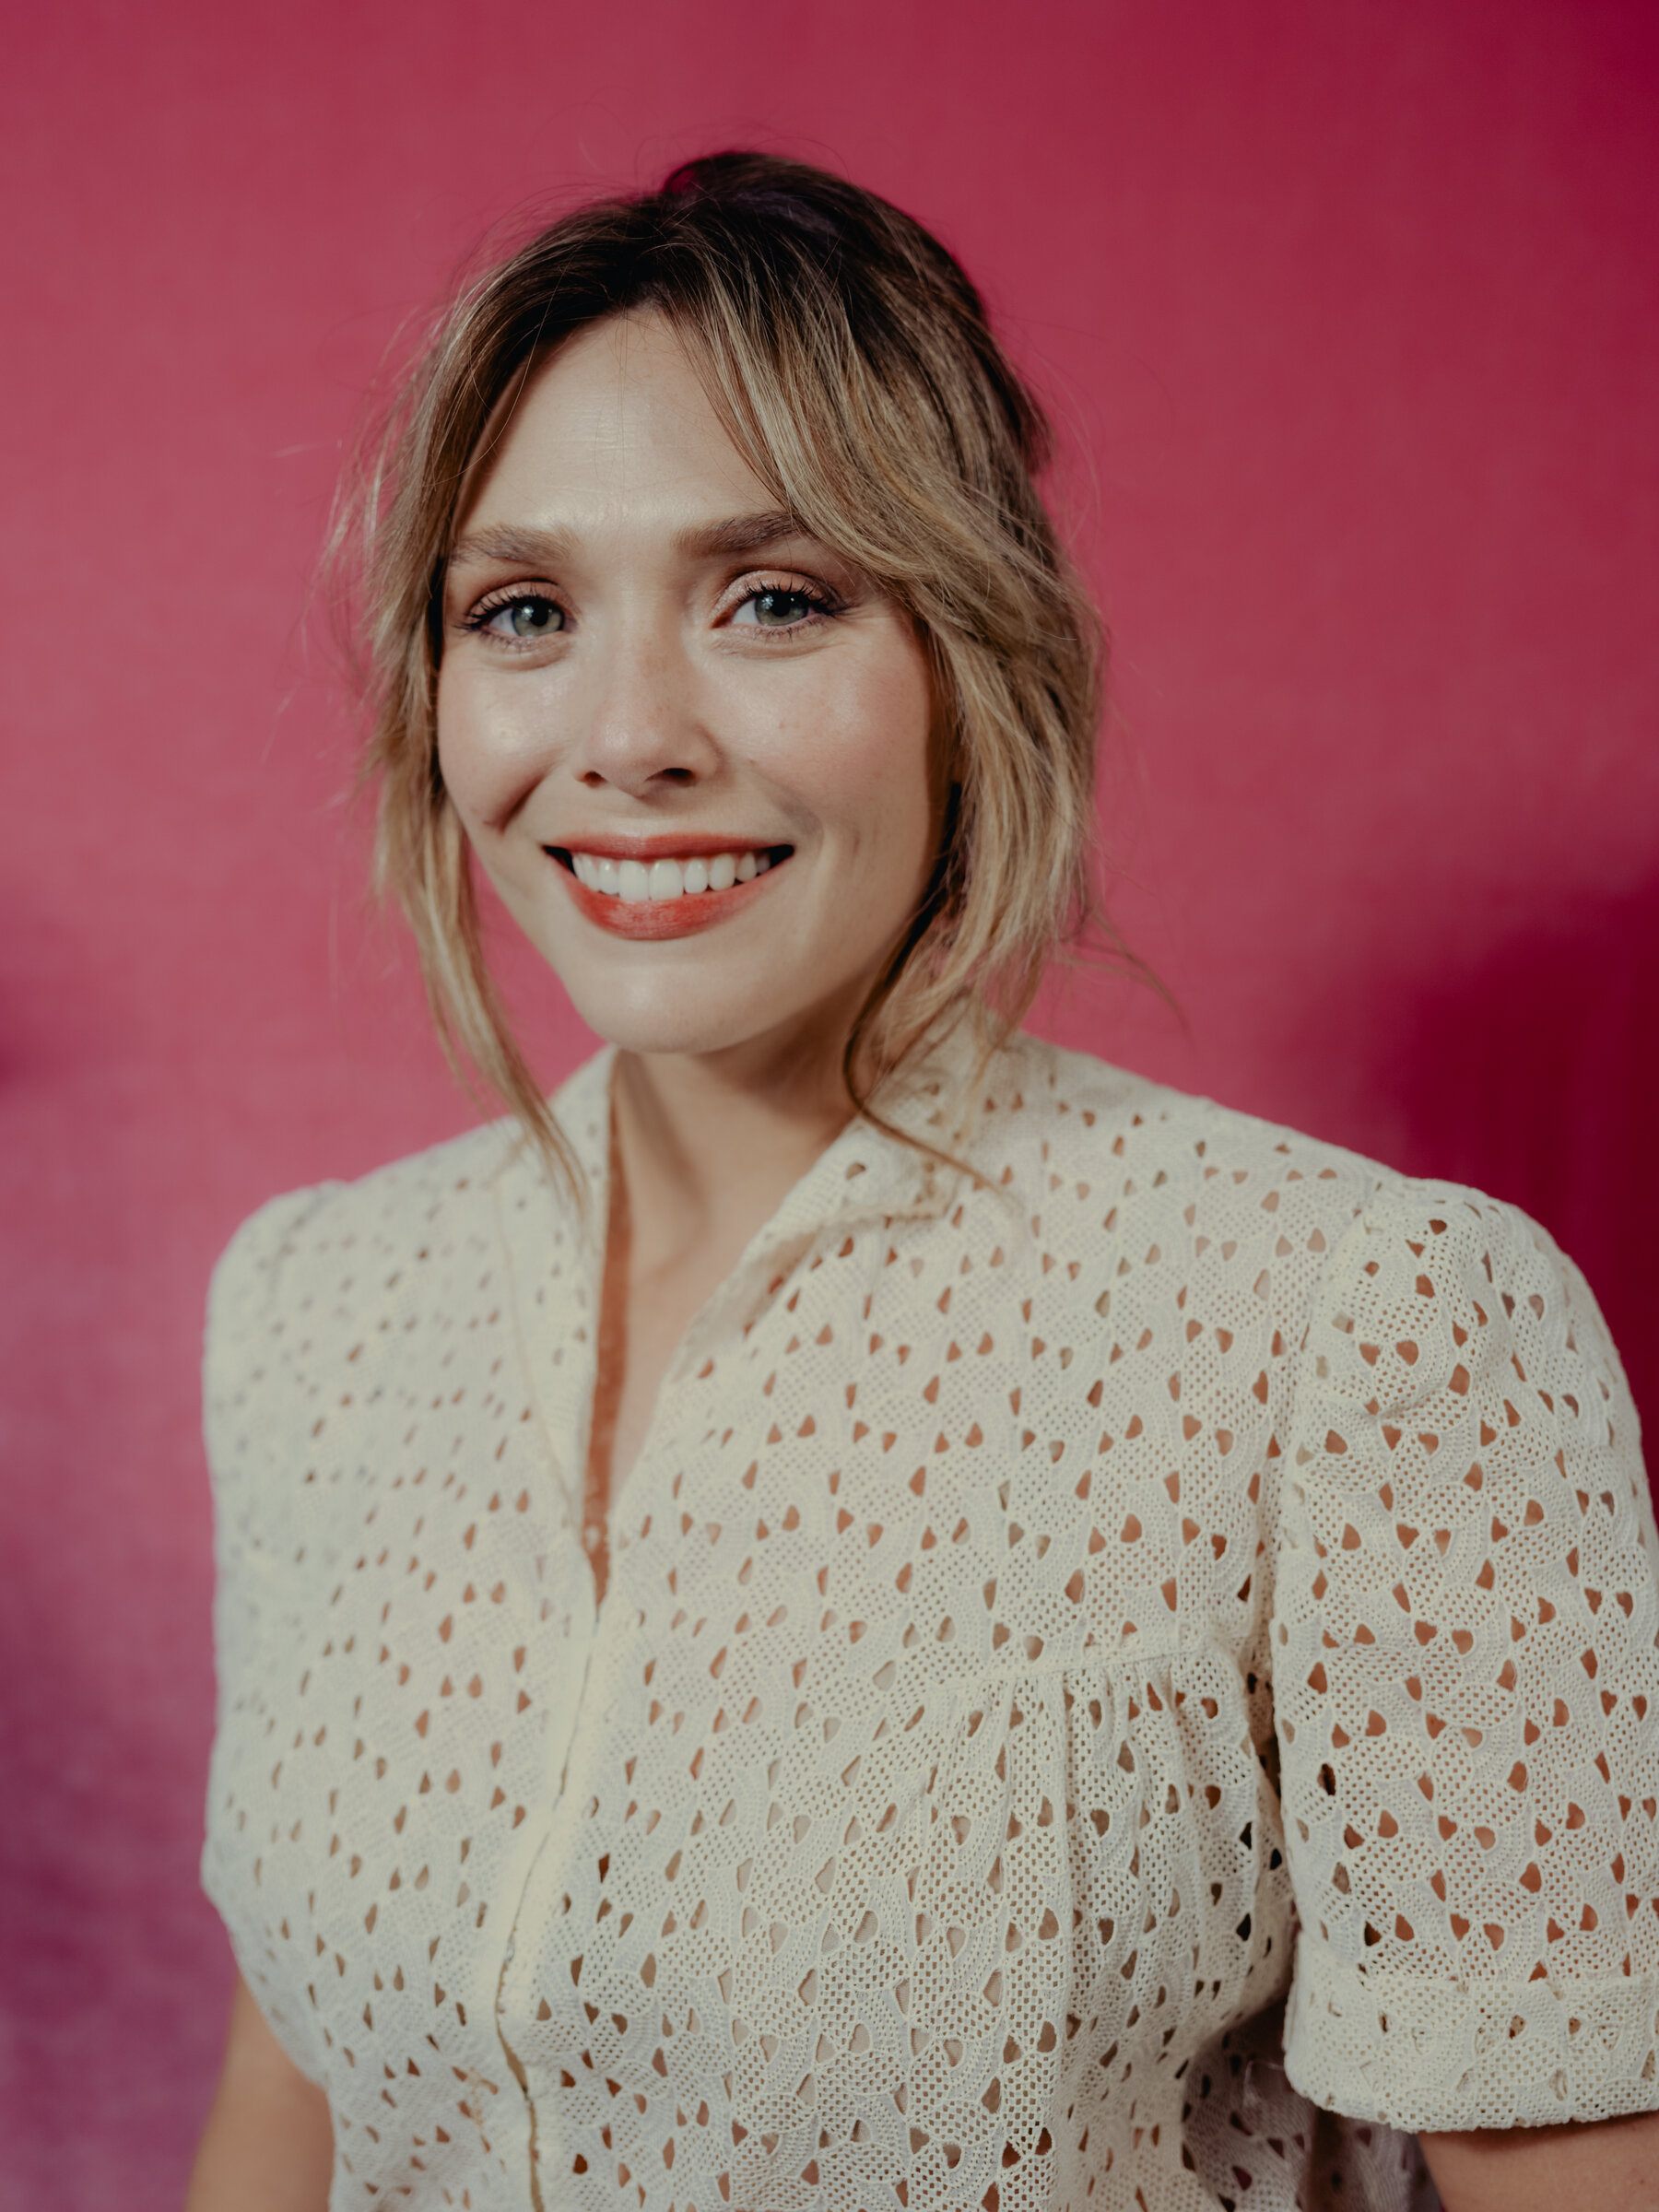 Cute Elizabeth Olsen 2021 Wallpapers